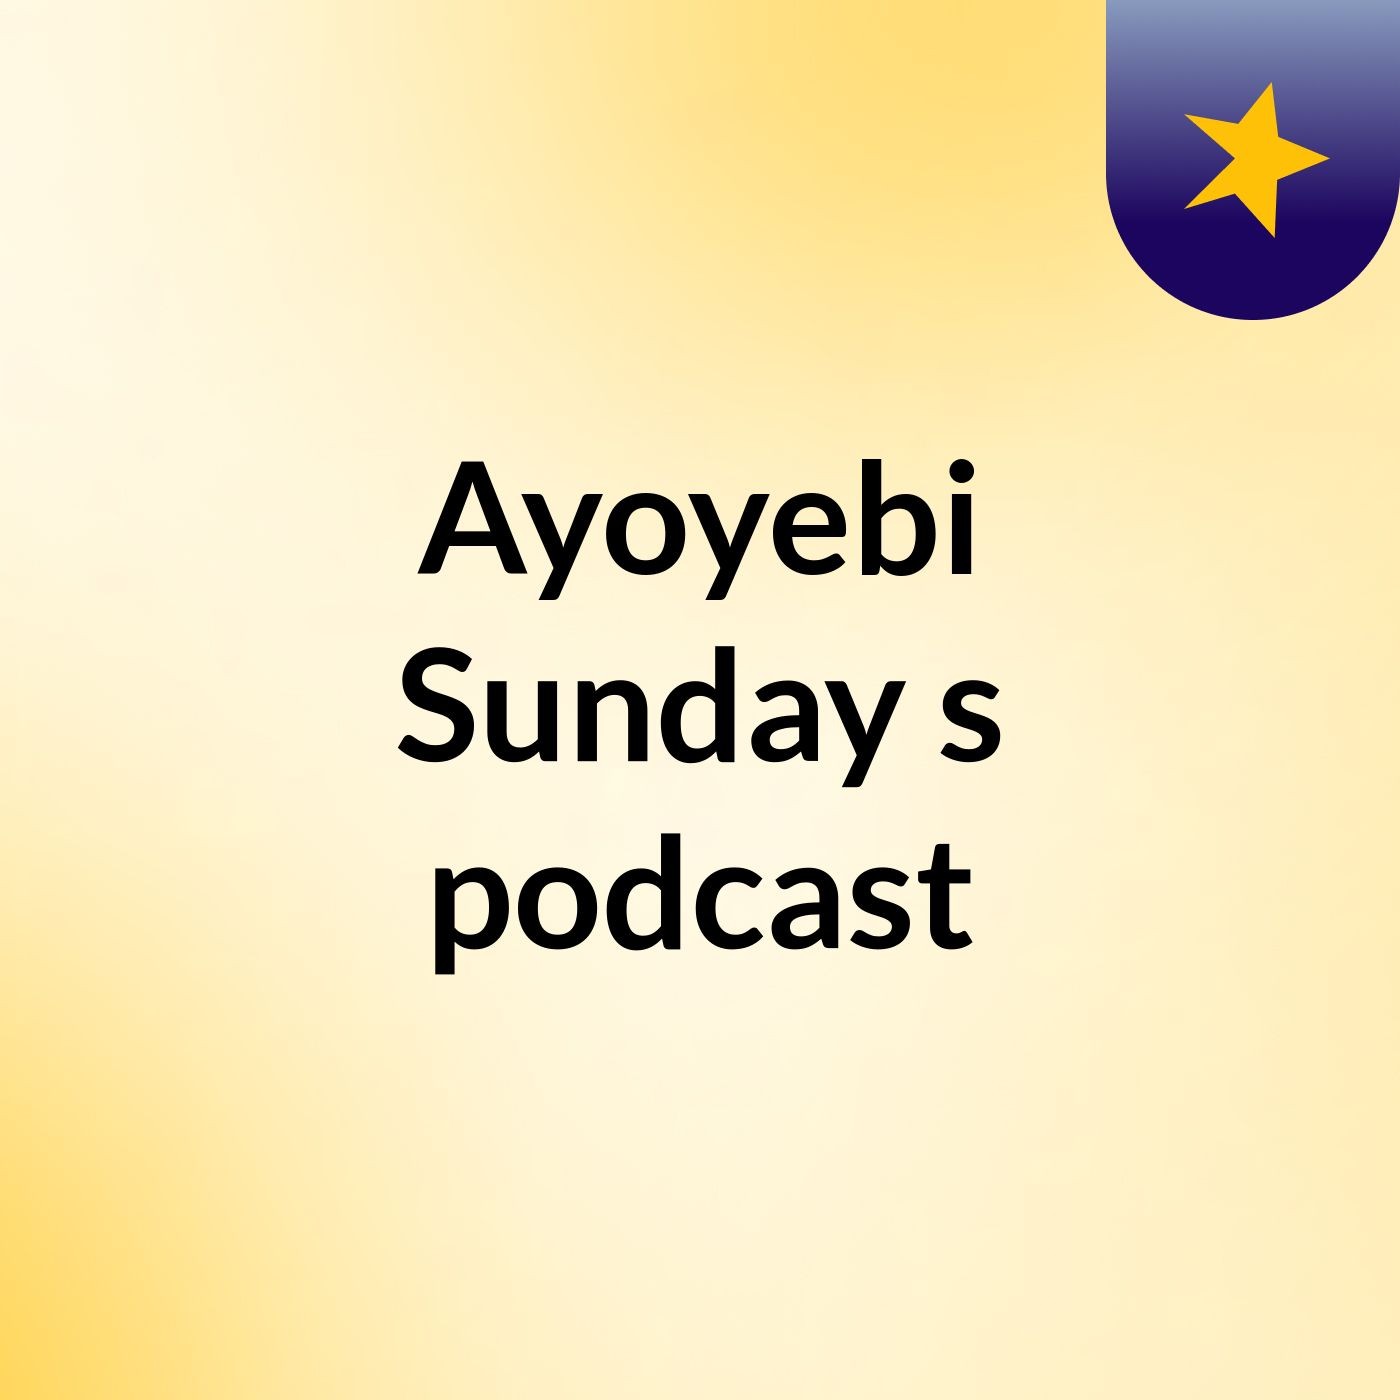 Episode 5 - Ayoyebi Sunday's podcast